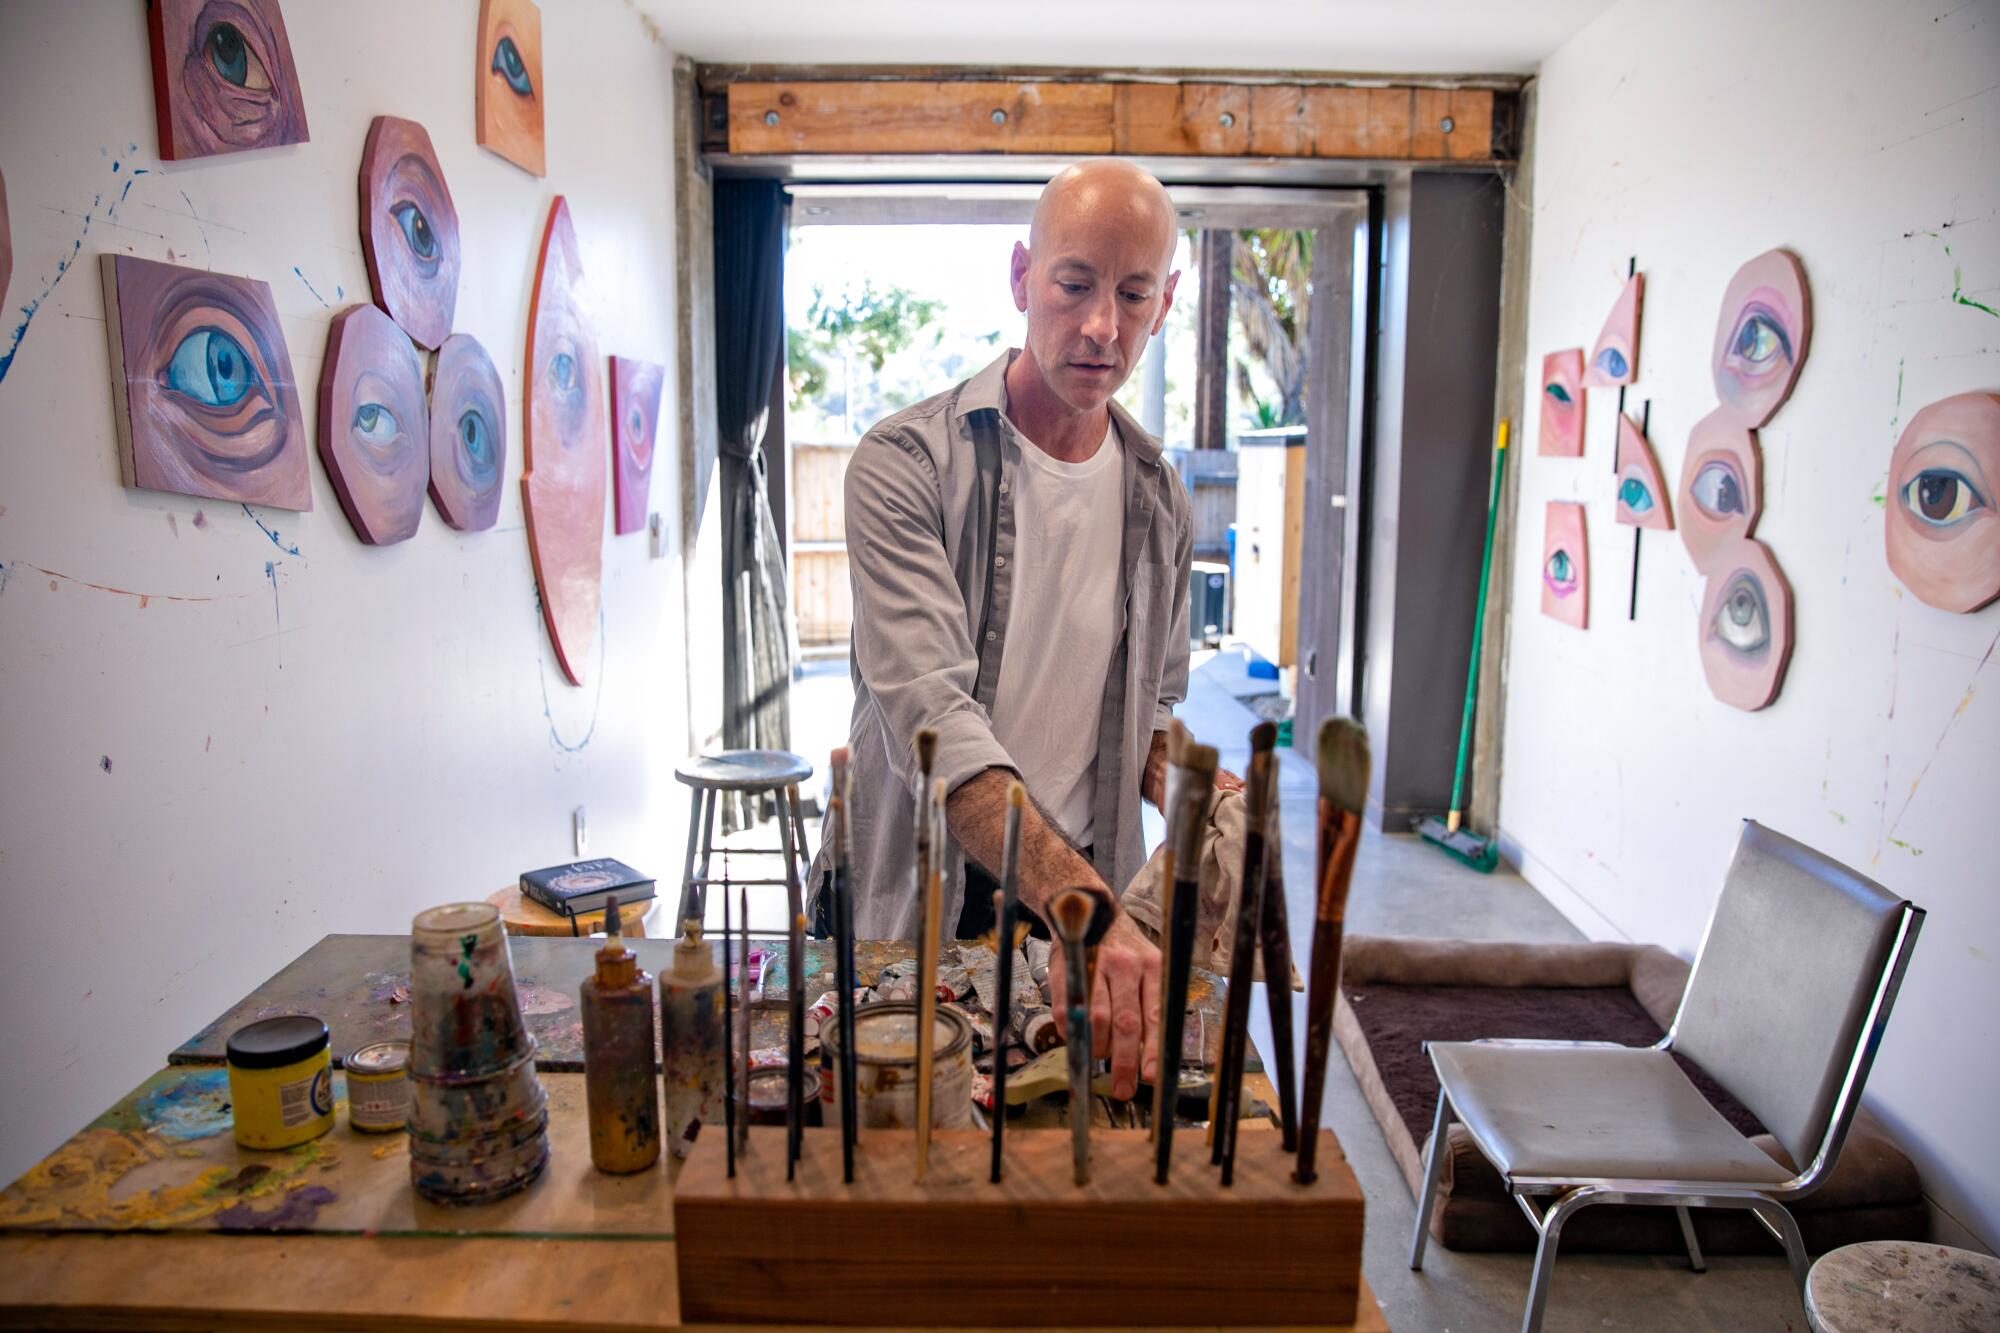 L'artiste local Daniel Gerwin remet de l'ordre dans son atelier.